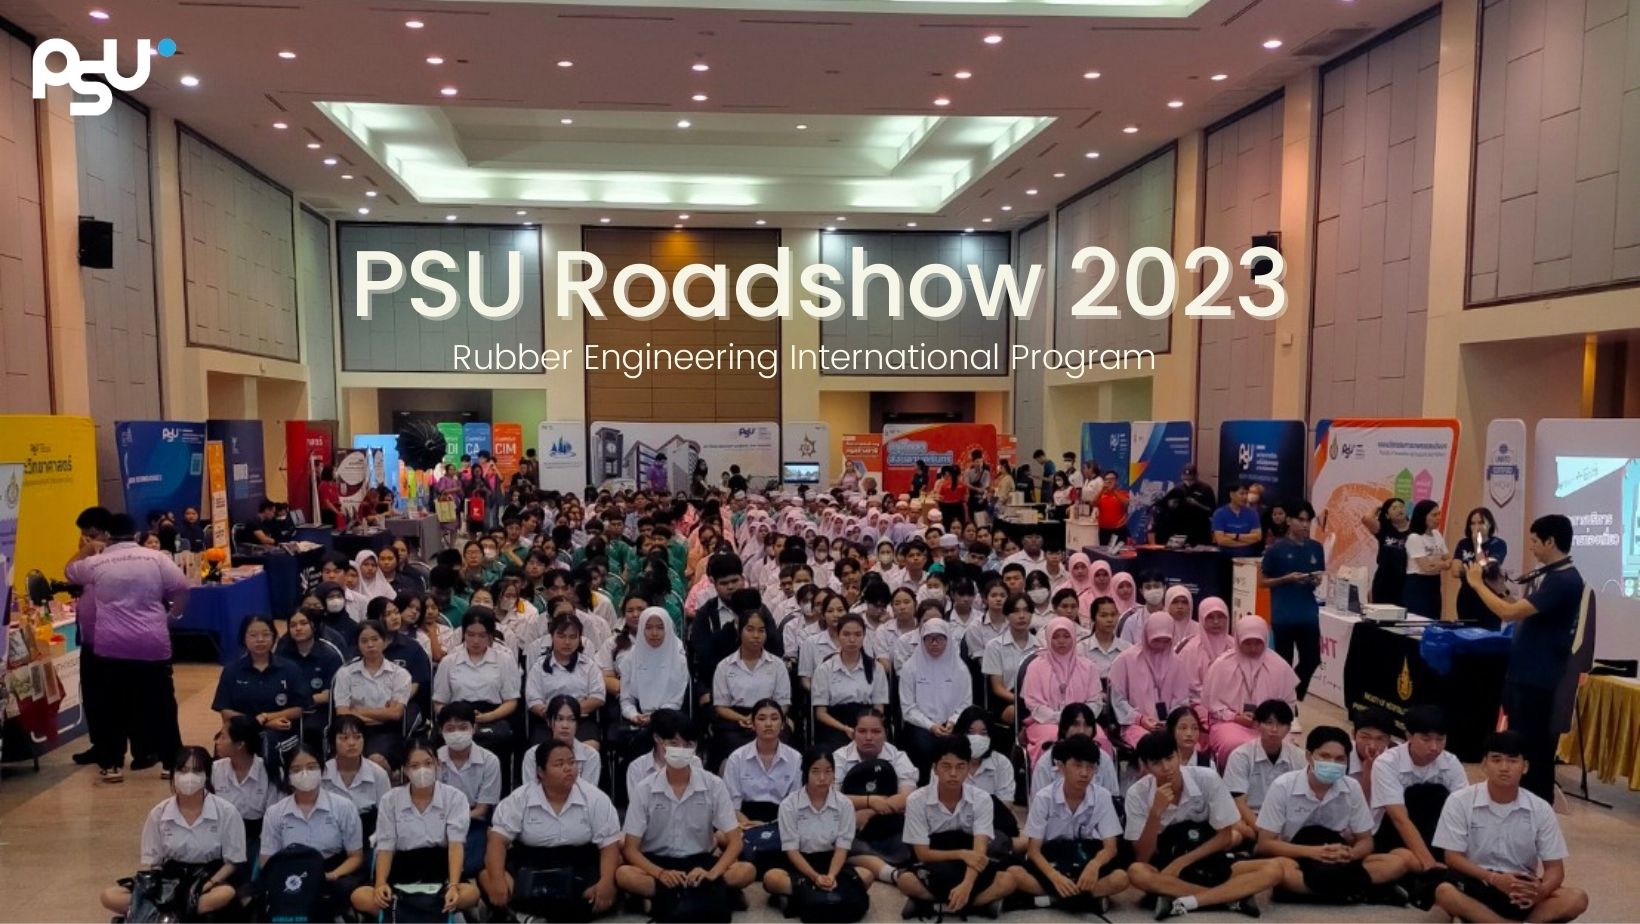 PSU Roadshow 2023